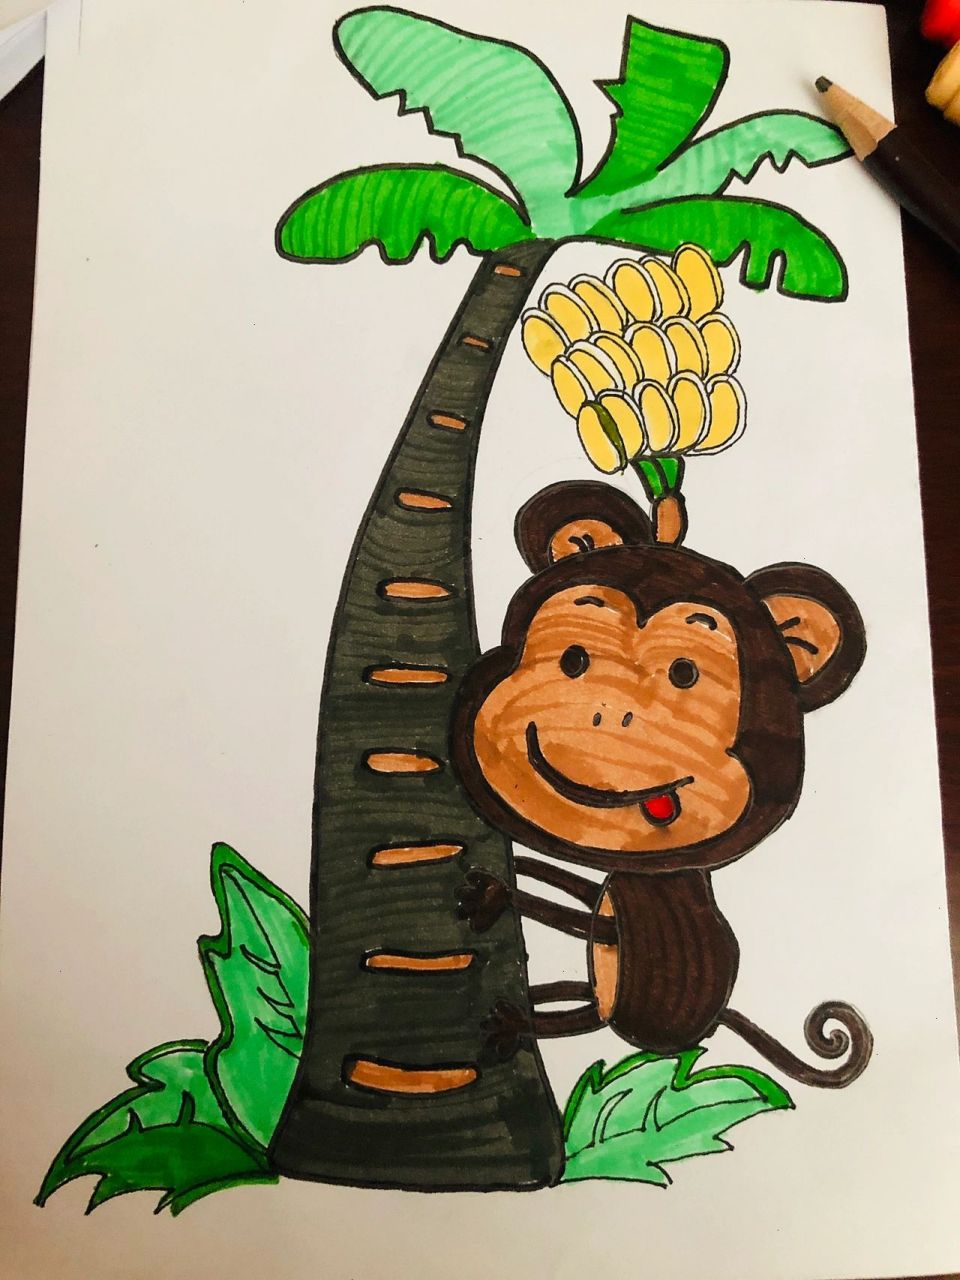 猴子上树儿童画图片